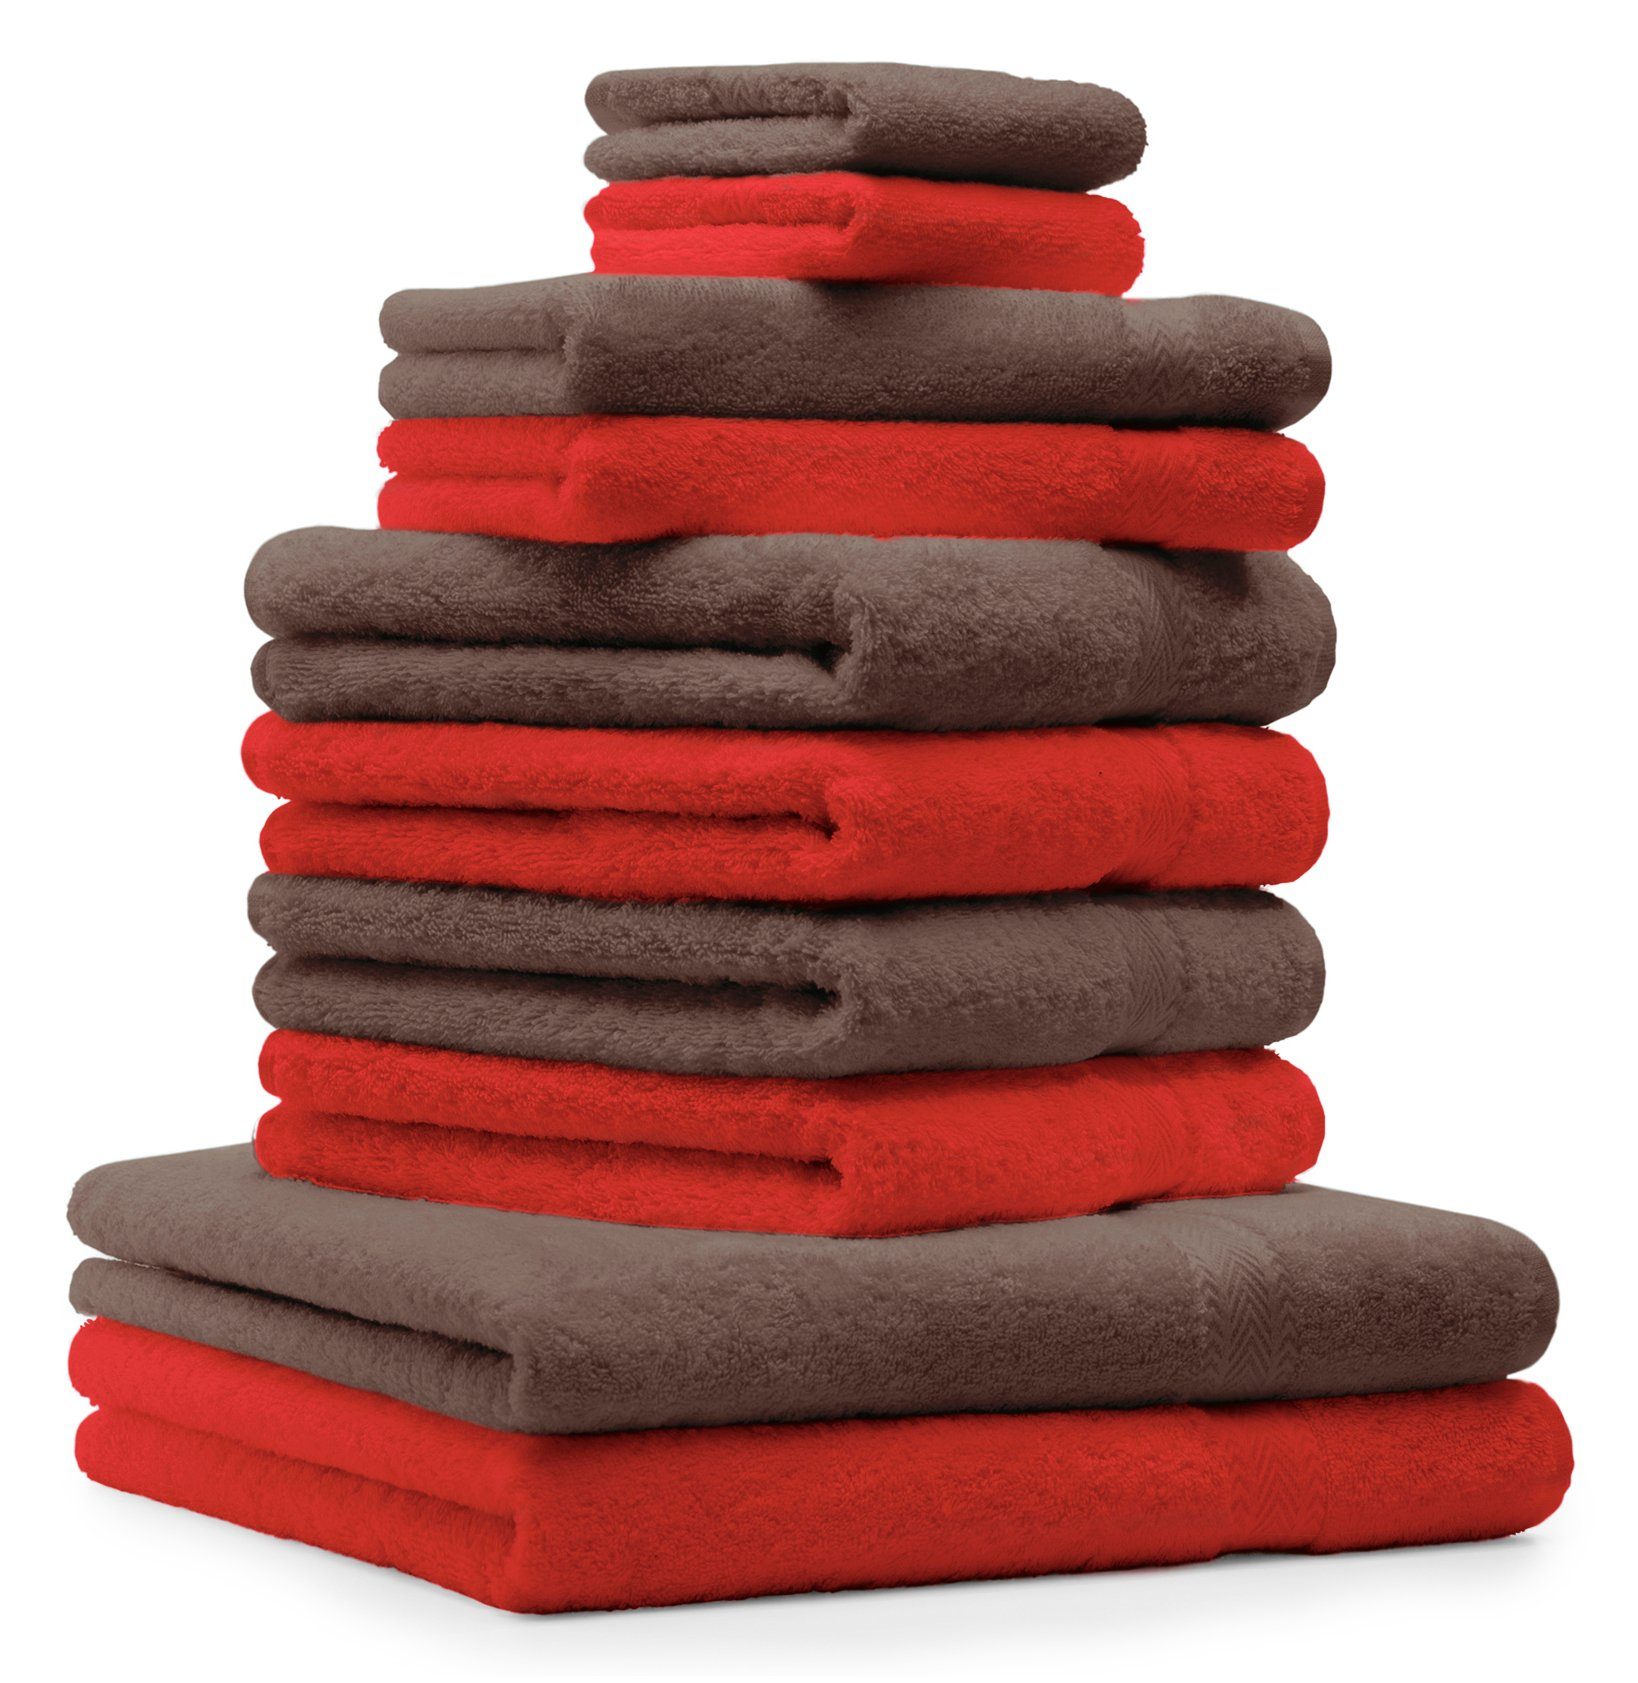 Betz Handtuch Set 10-TLG. Handtuch-Set CLASSIC 100% Baumwolle Farbe rot und nussbraun, 100% Baumwolle